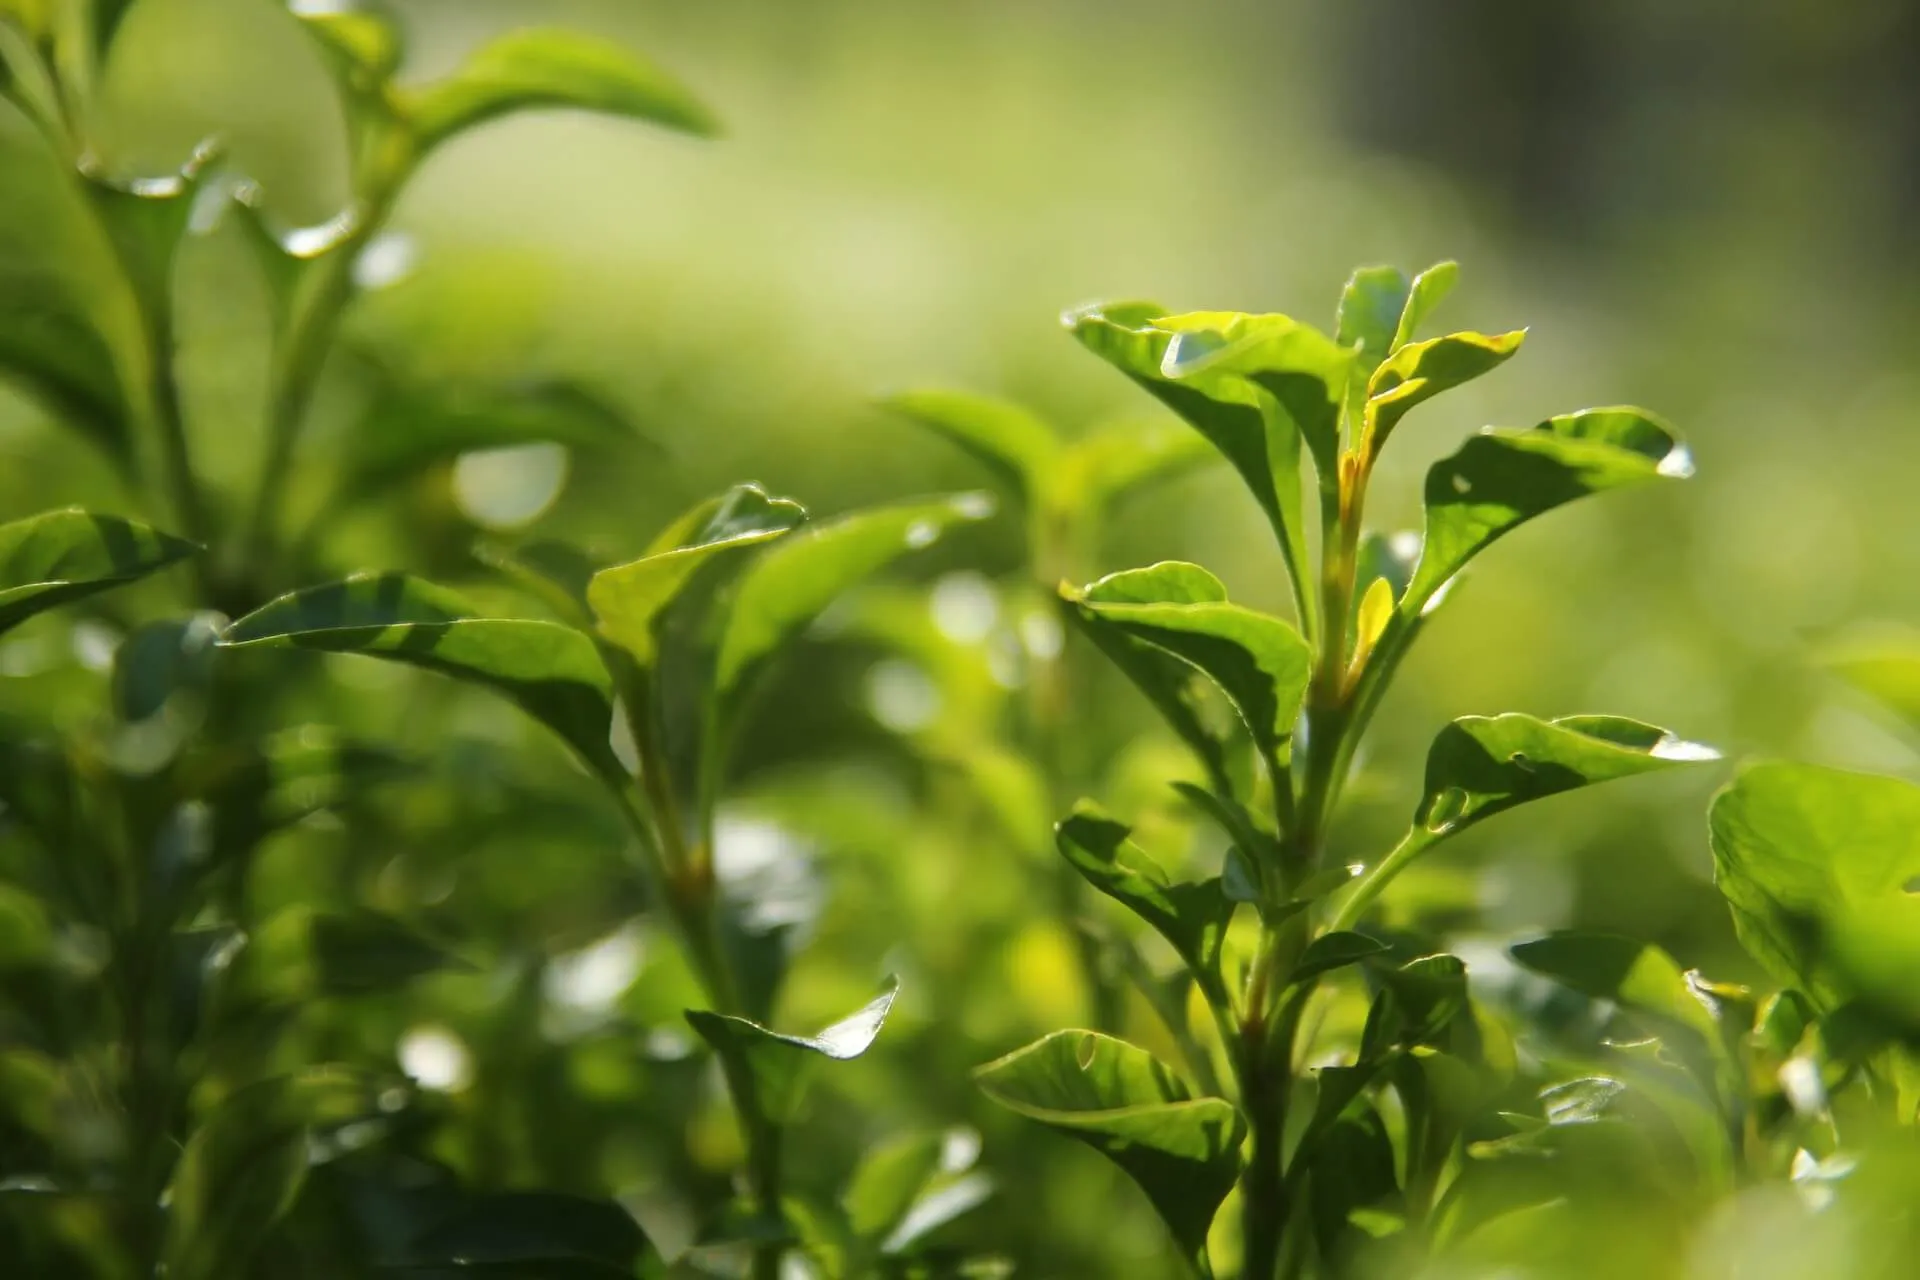 Herbata oolong charekterezuje się wielostopniowym procesem produkcji, gdzie każda zmiana procesu pozwala otrzymać całkiem inny produkt. W nowym artykule z Food Chemistry: X zbadano, w jaki sposób metody przetwarzania i kultywar krzewu herbacianego wpływają na charakterystykę aromatu herbaty oolong.